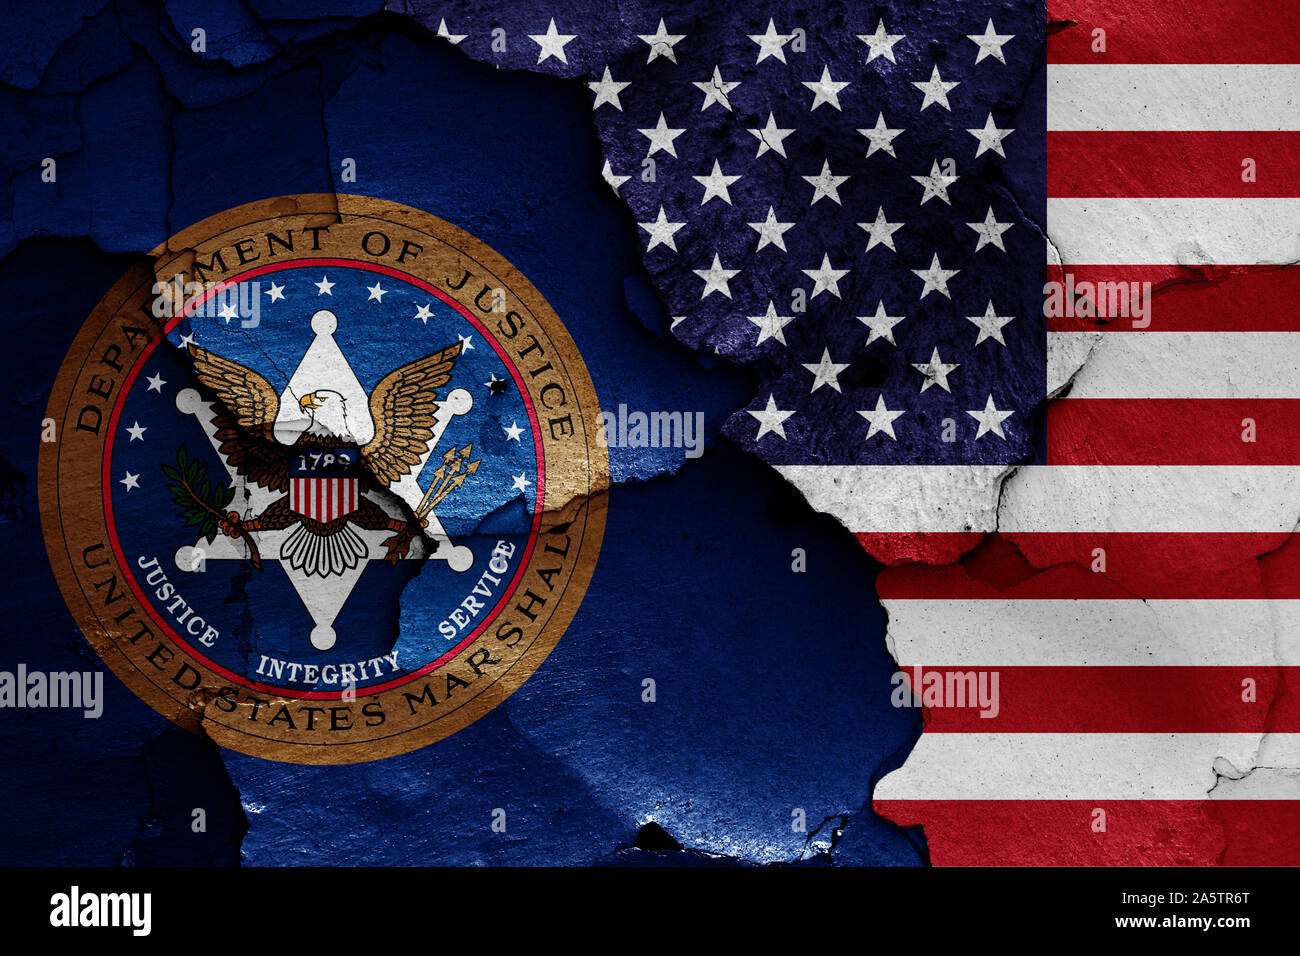 Flaggen der United States Marshals Service und USA malte auf Risse an der Wand Stockfoto